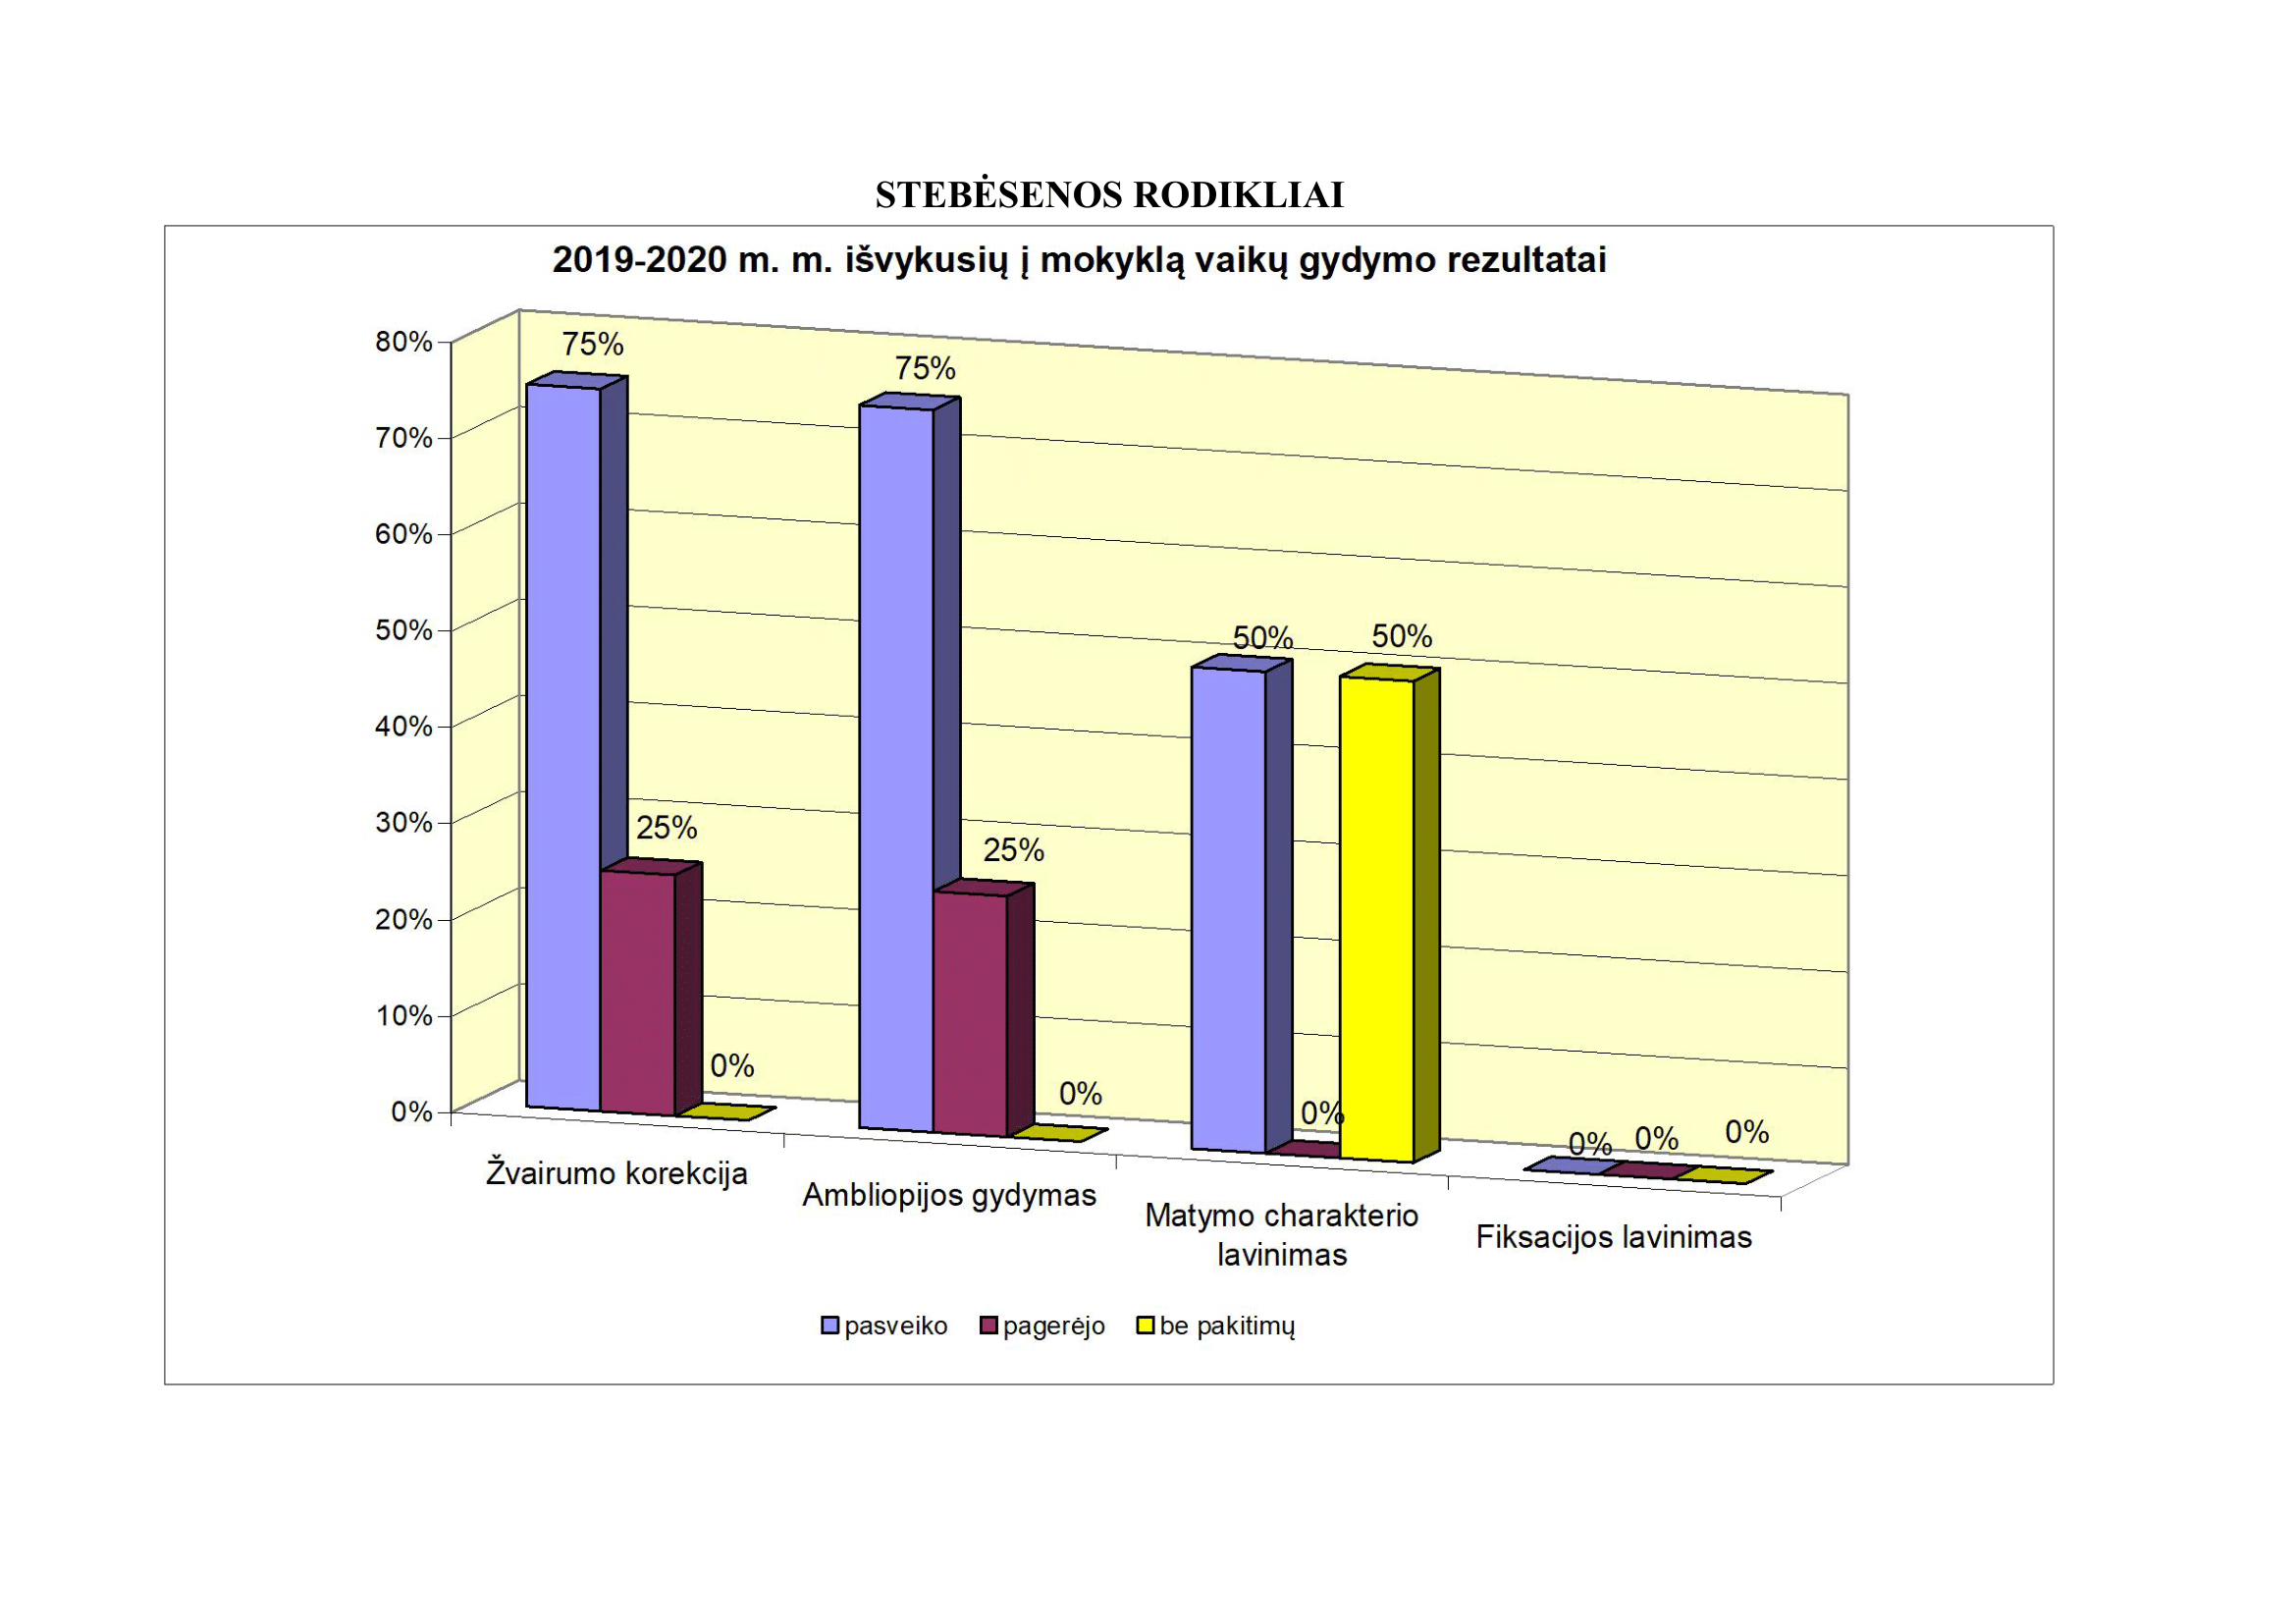 Išvykusių į mokyklą vaikų gydymo rezultatai. 2017-2018 mokslo metai